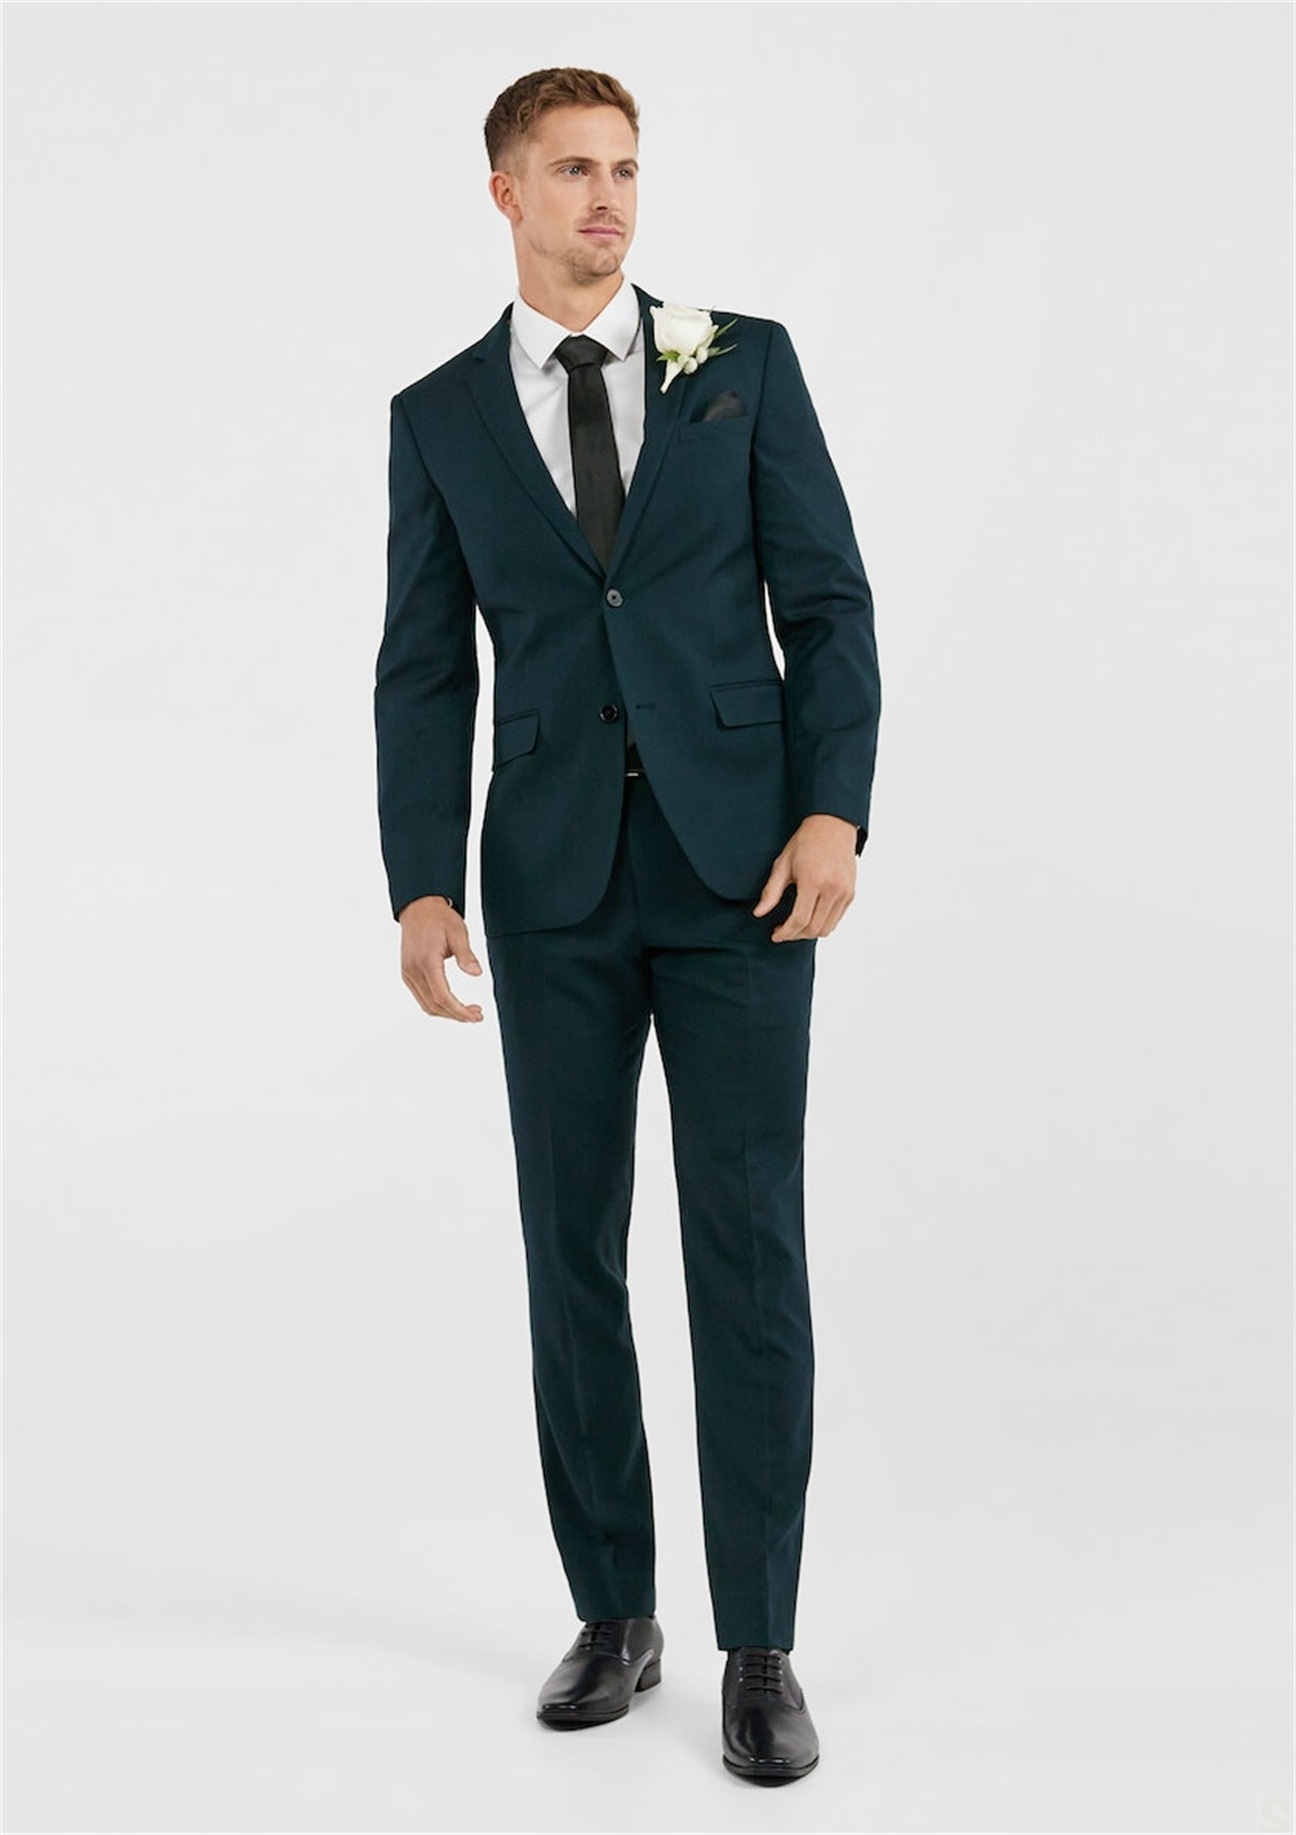 Mężczyzna garnitur Tuxedos Party Suit Slim Fit Business Casual Tape Sets 2 sztuki kostium Homme